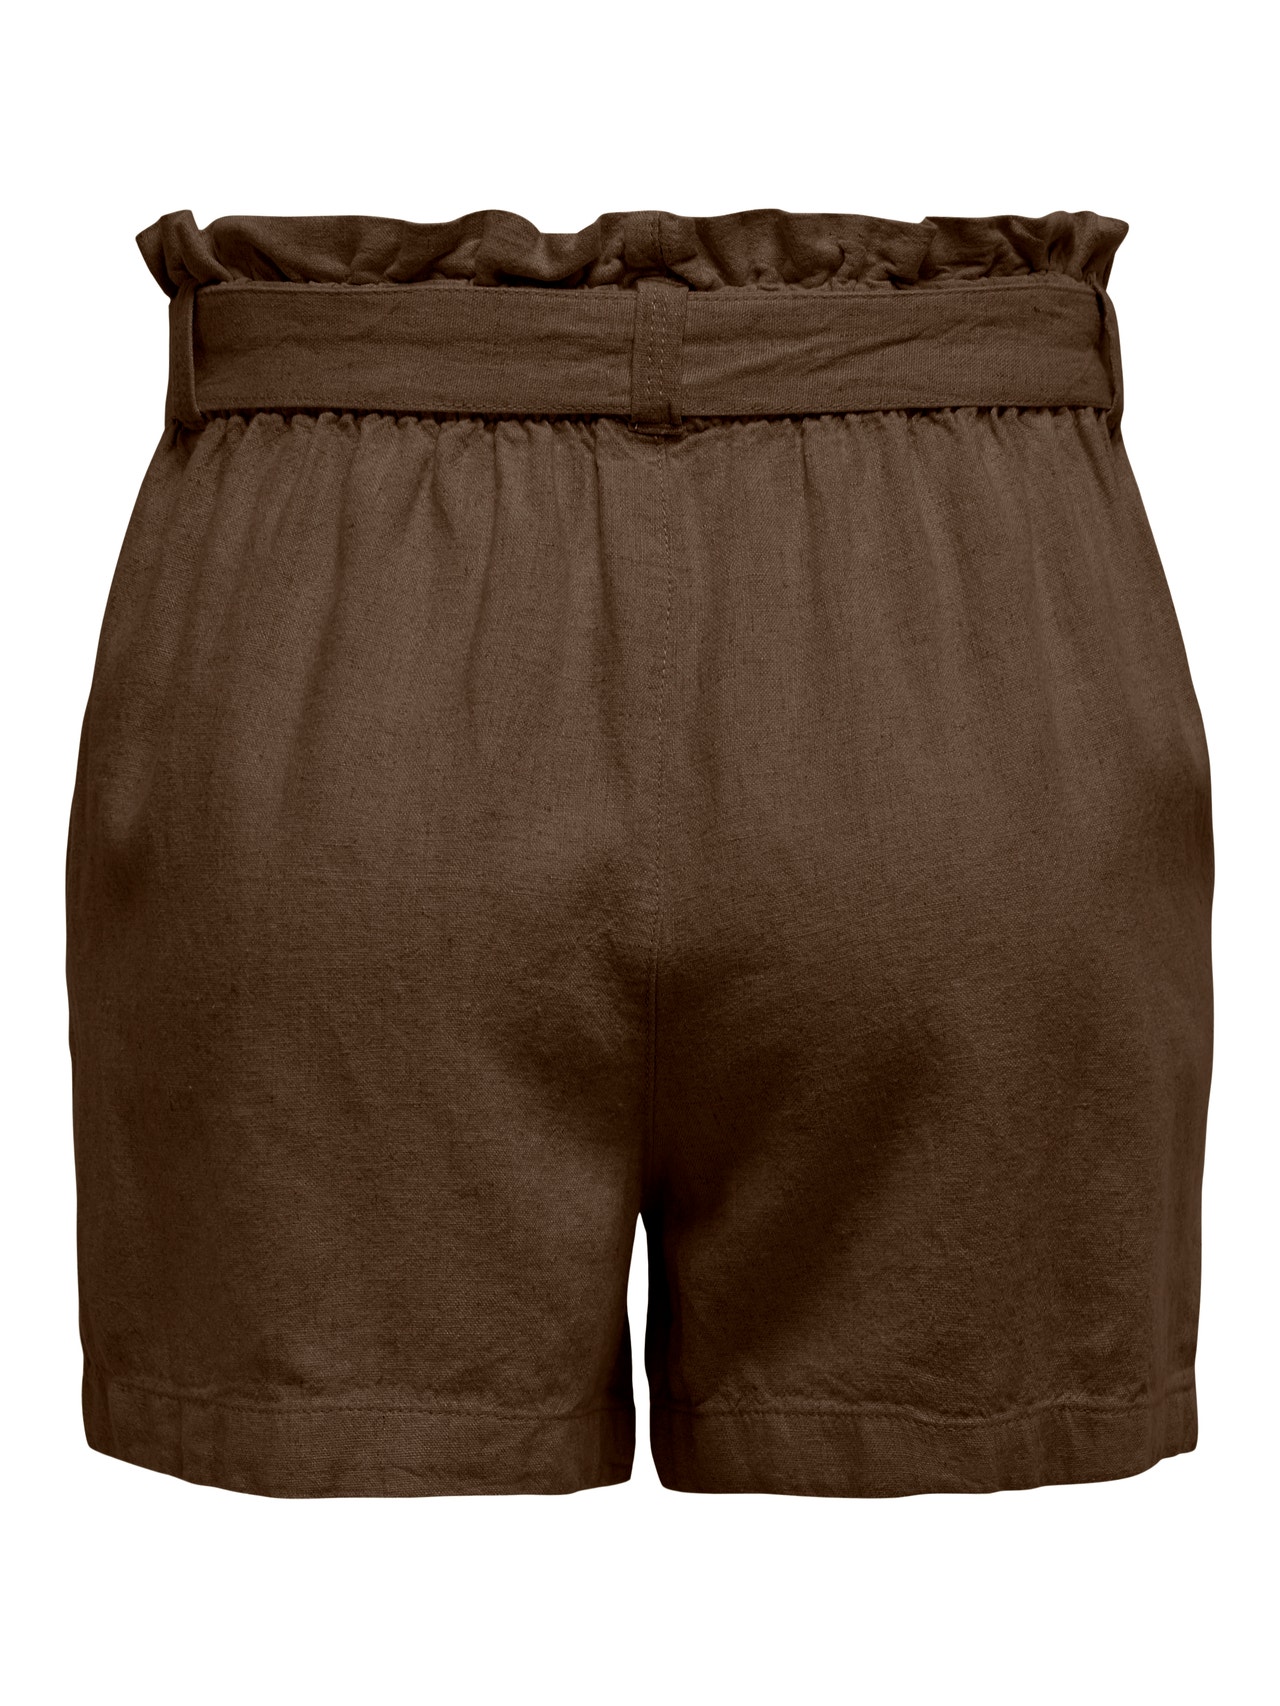 ONLY Gürtel Leinen Shorts -Carafe - 15225921